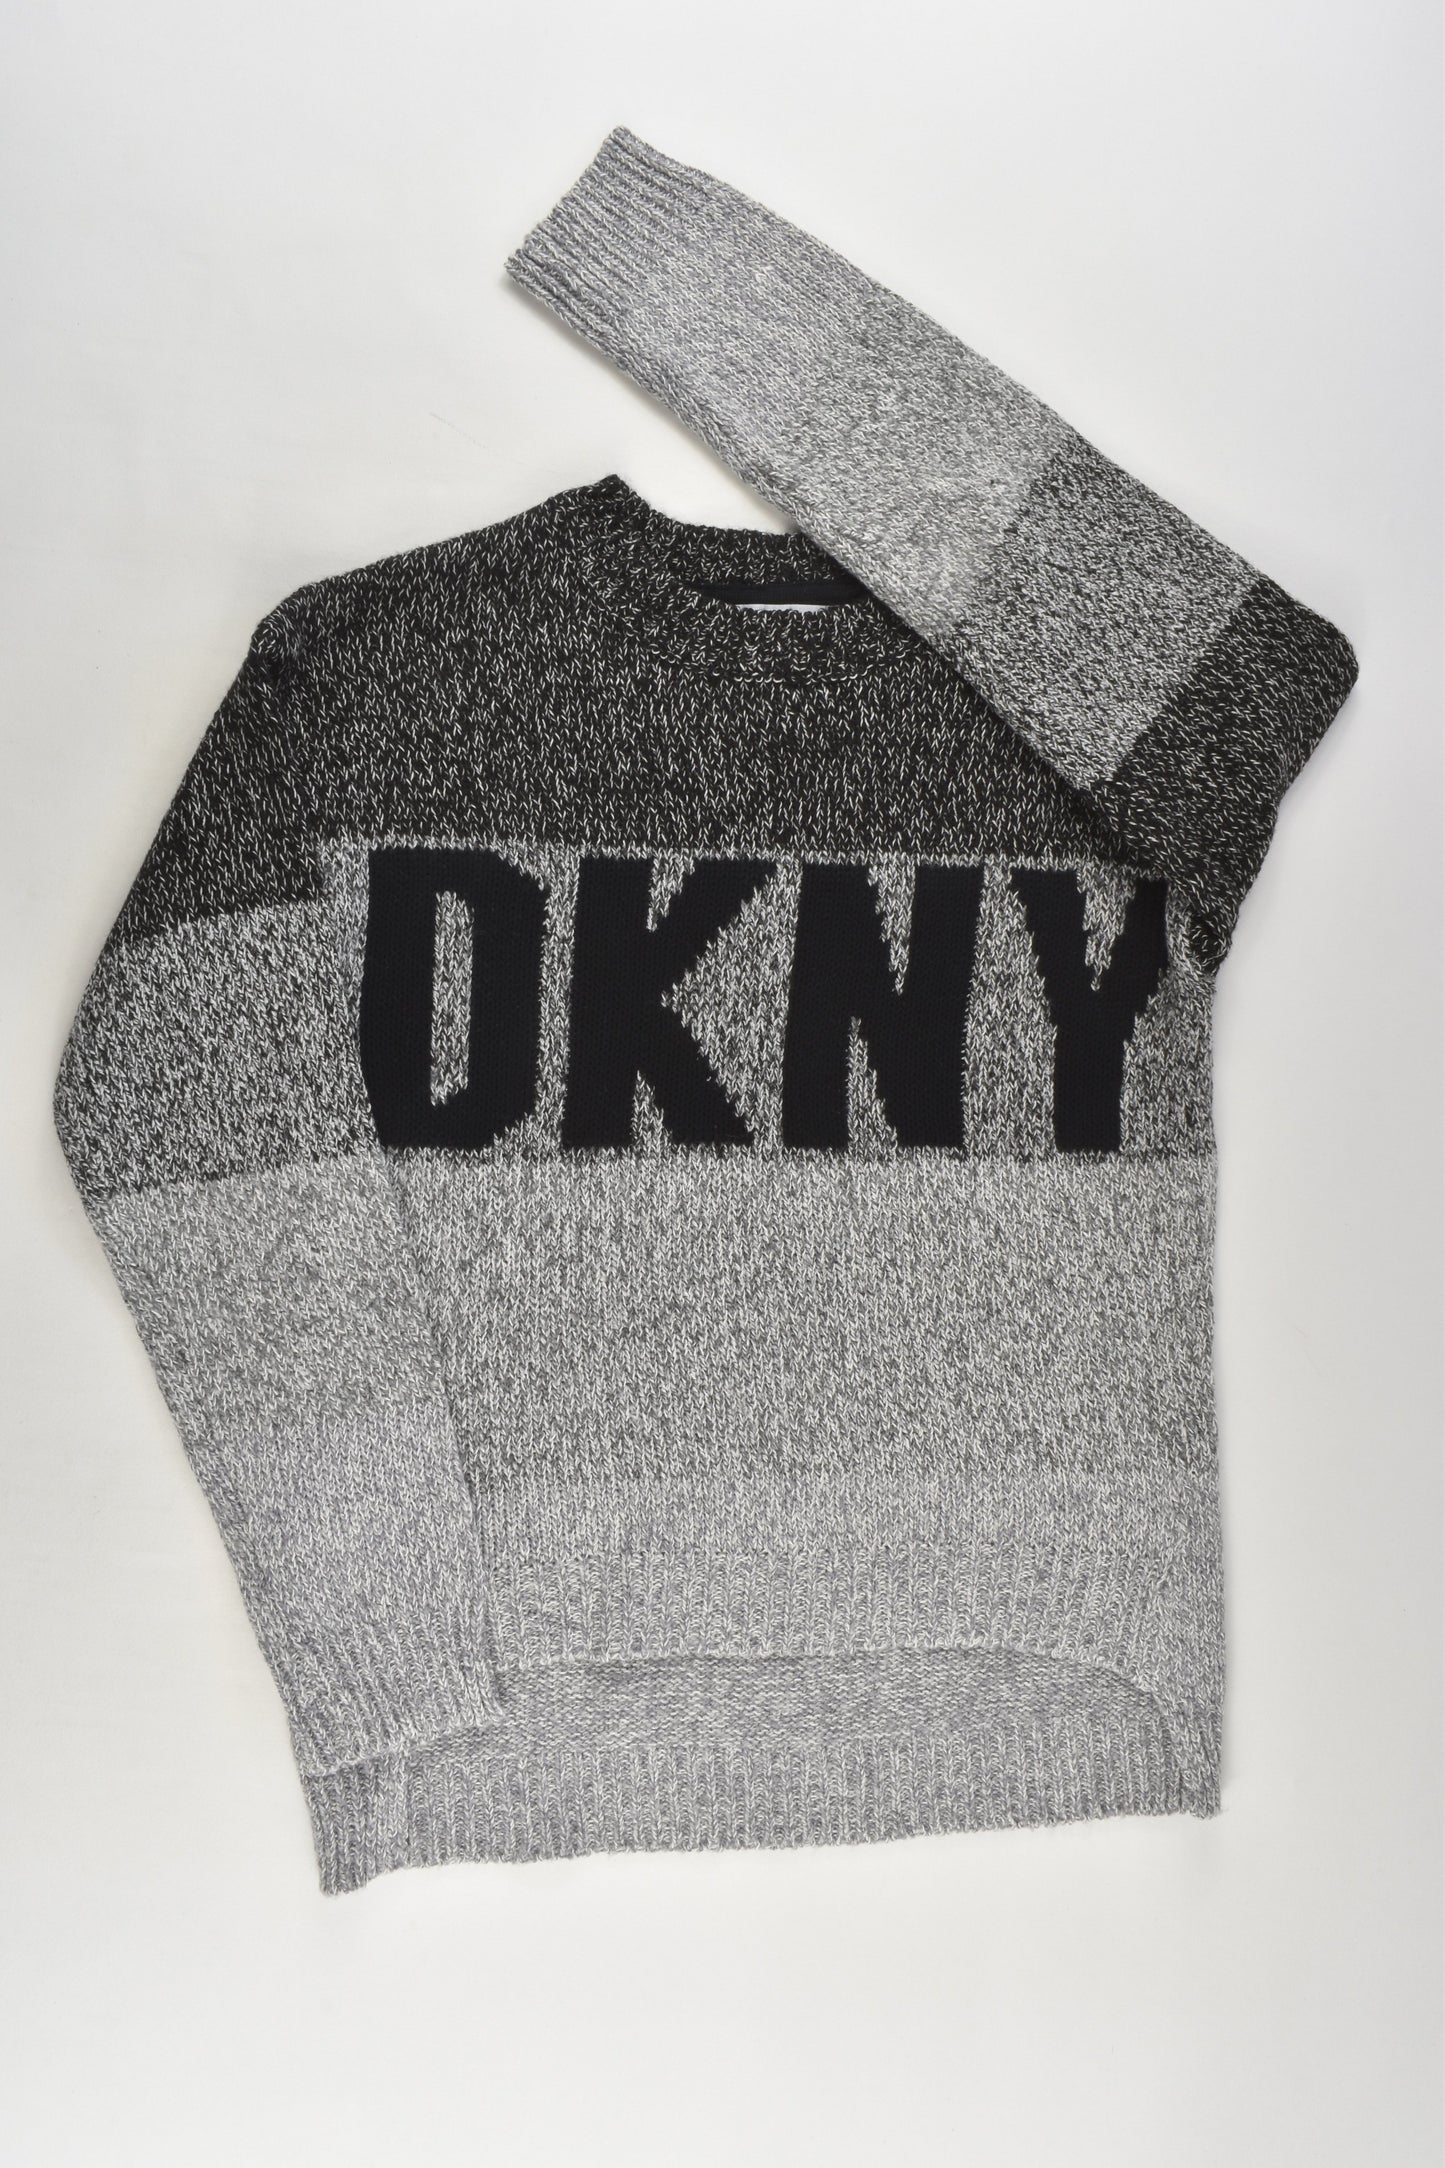 DKNY Size 7 (S) Knit Jumper